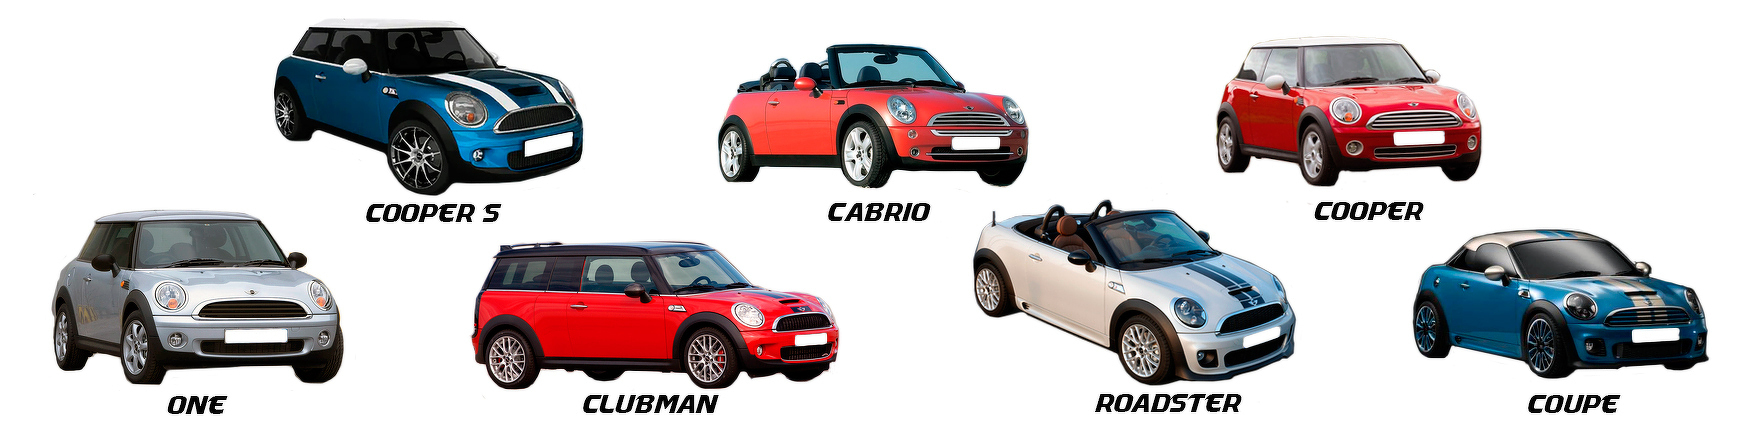 Piezas y Recambios de BMW Mini One | Clubman | Cooper | S | Coupe | Roadster | Cabrio (R56|R57|R58|R59) de 2007 a 2014 | Veramauto.es